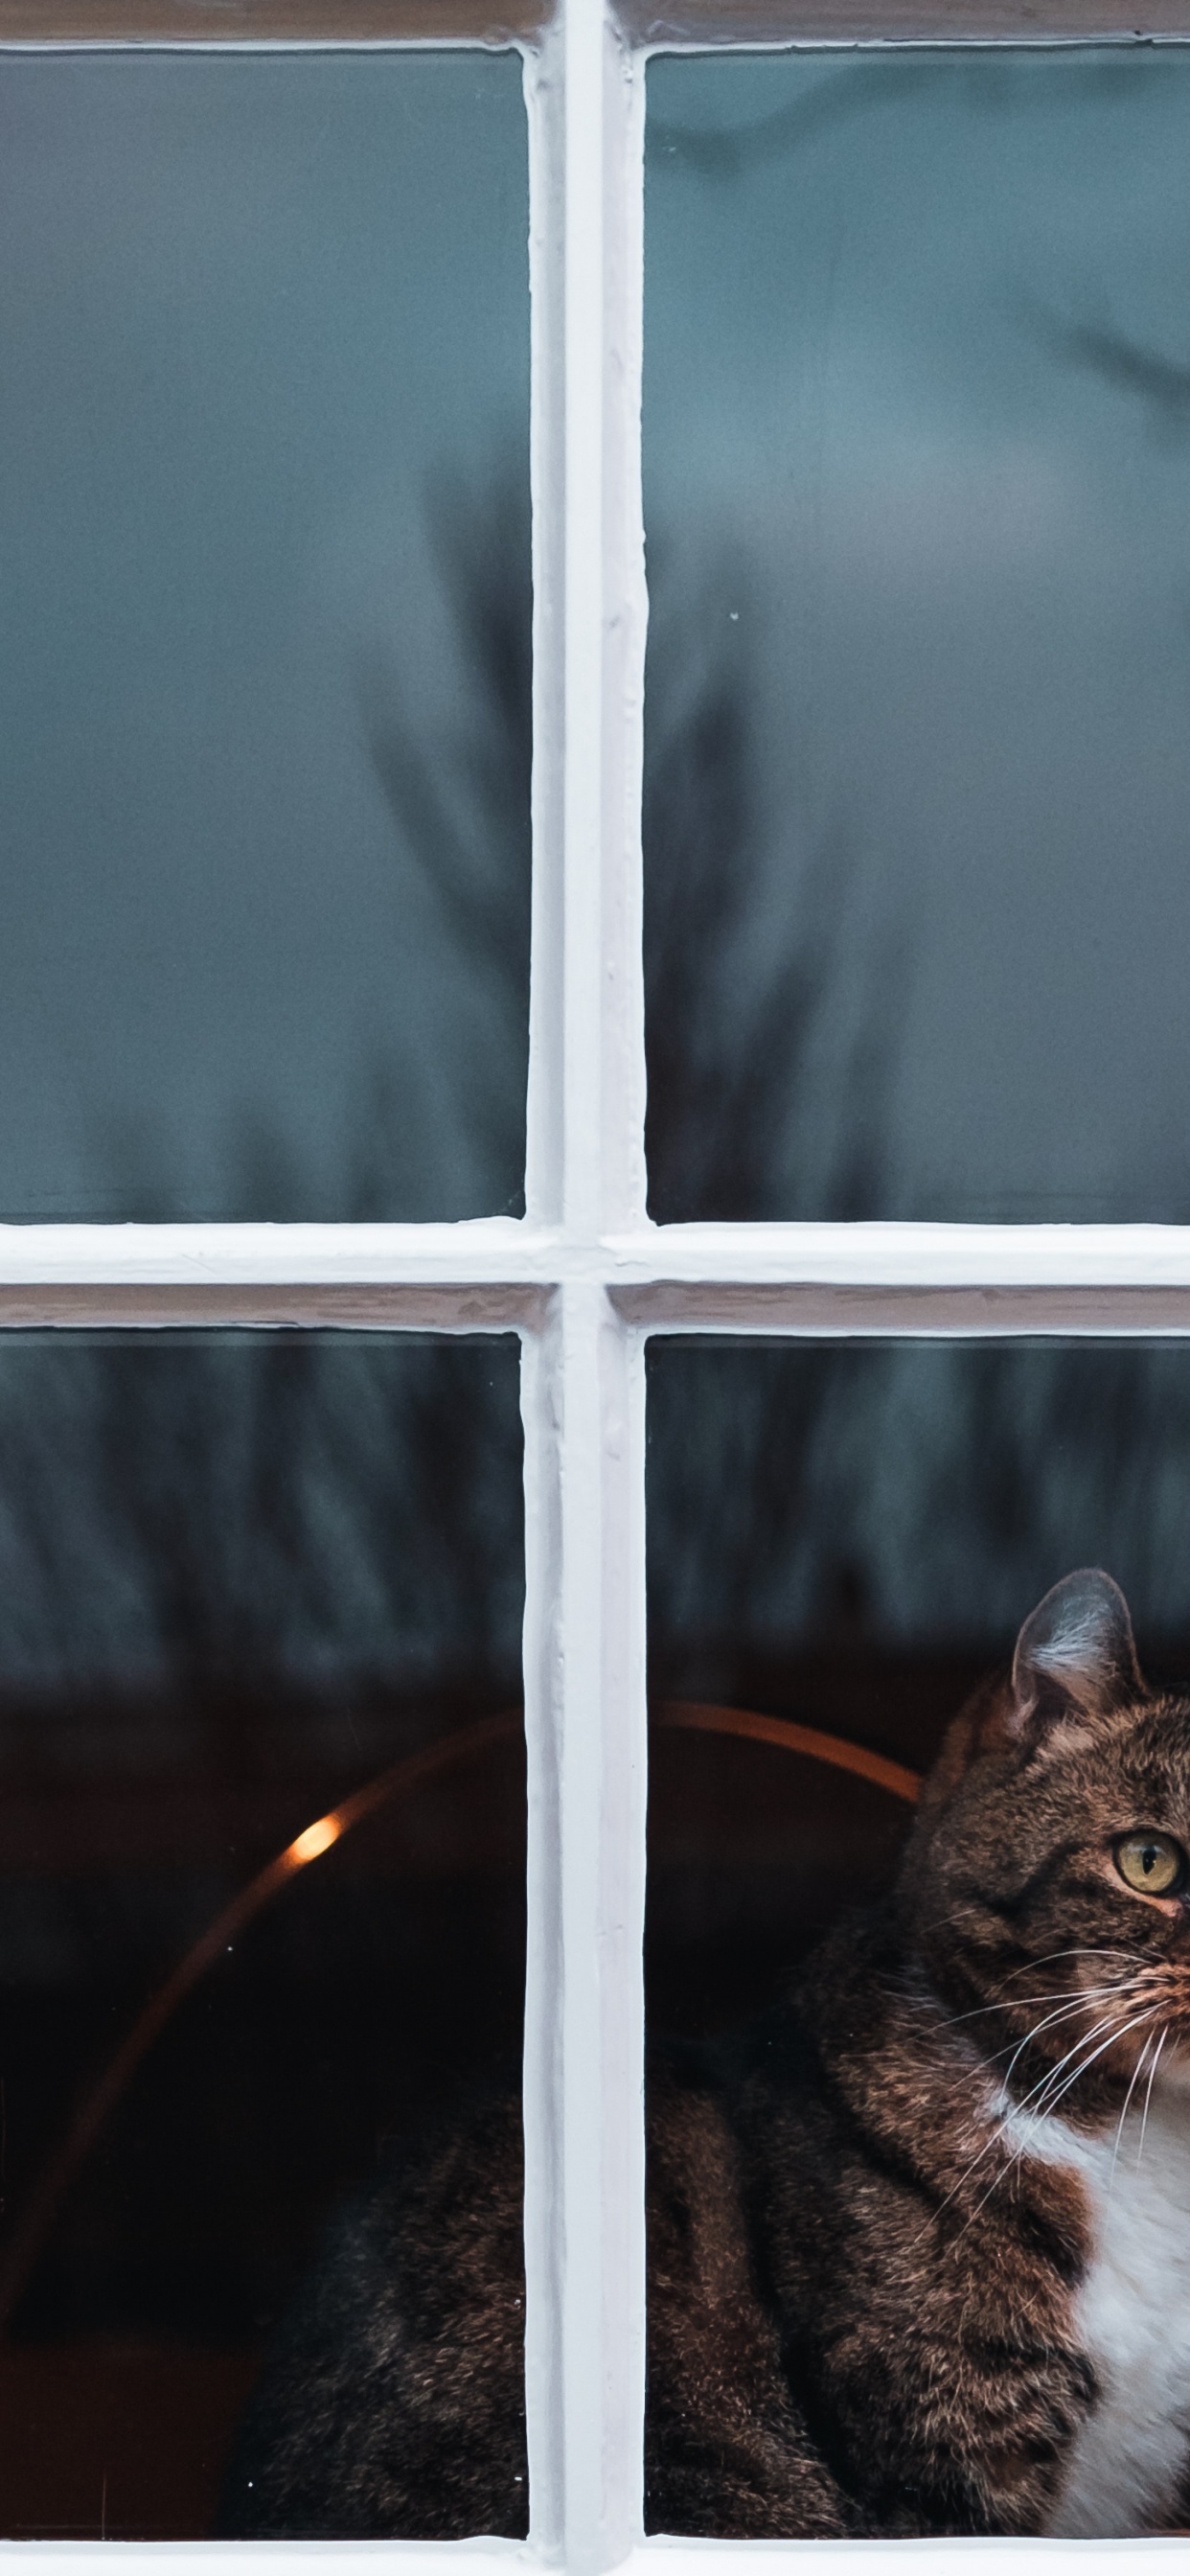 Braun Getigerte Katze am Fenster. Wallpaper in 1242x2688 Resolution